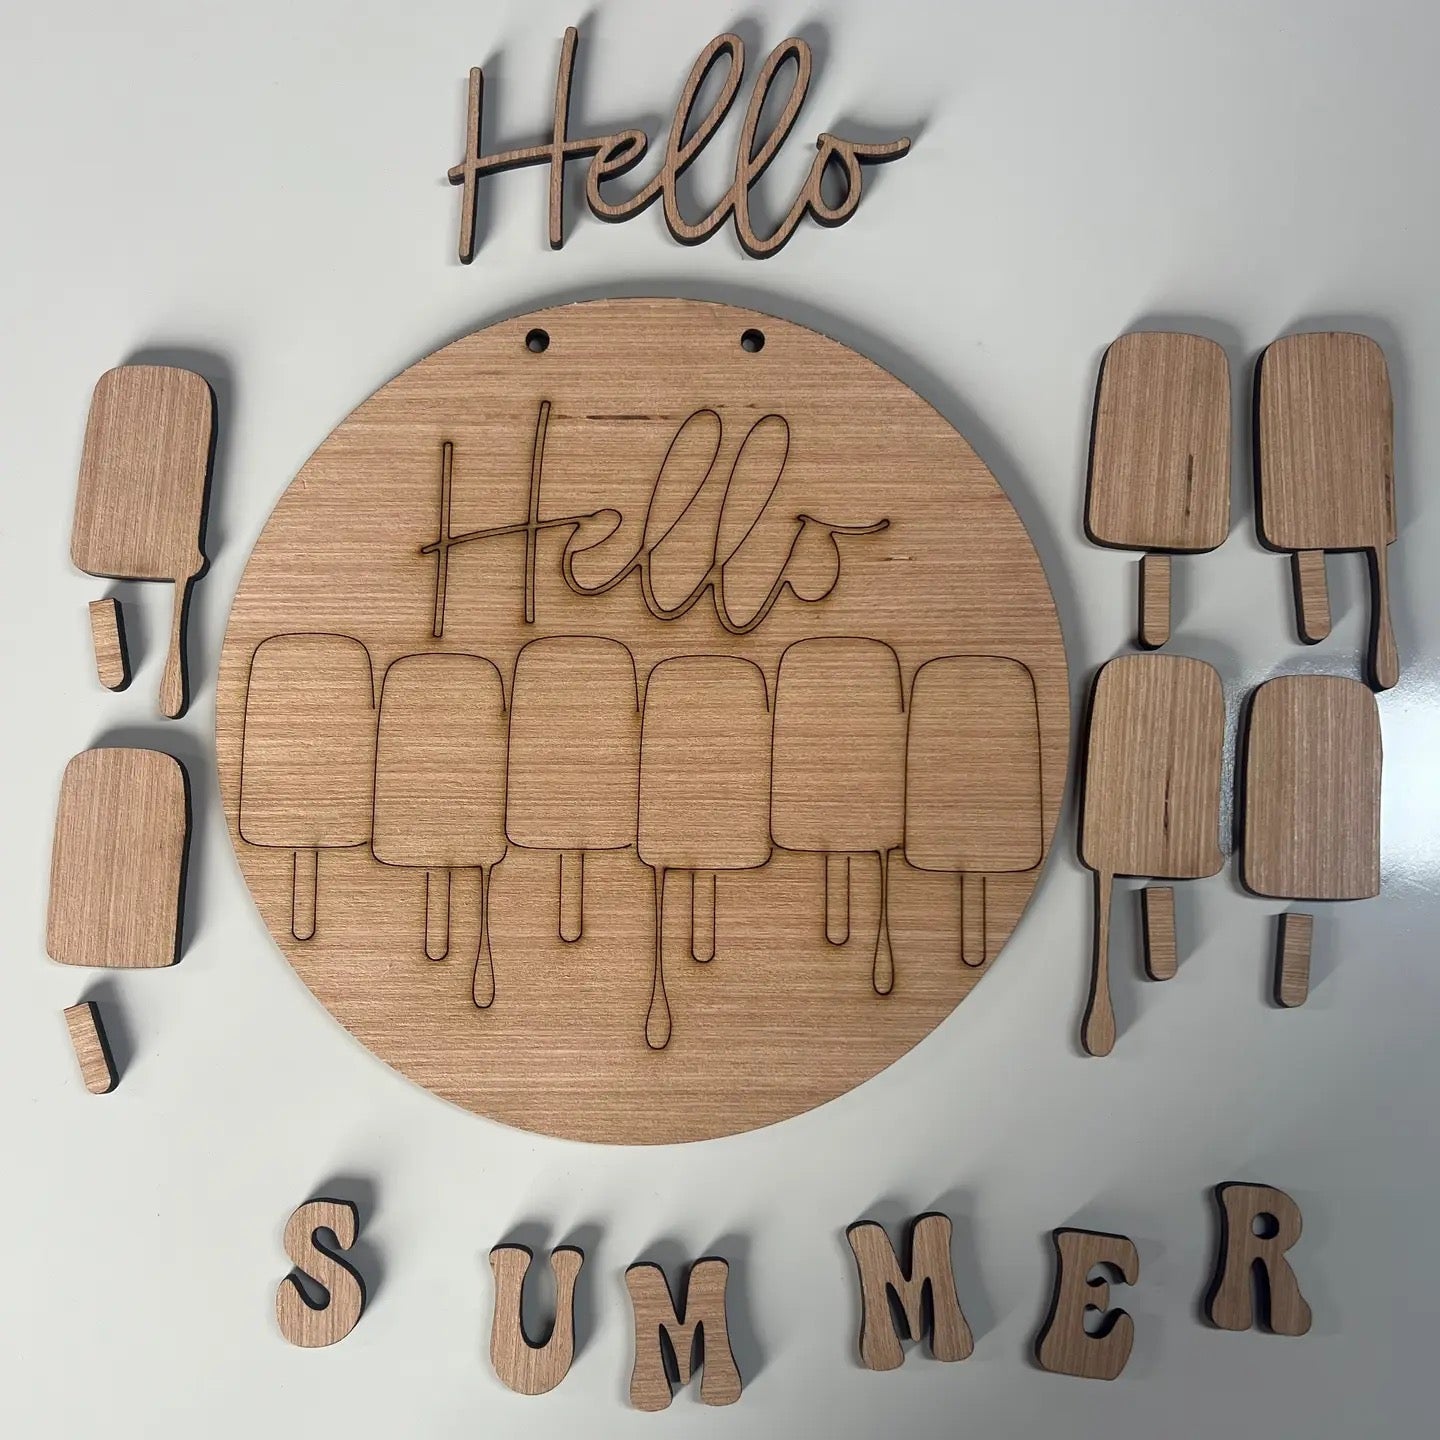 Summer Door Hangers June 22